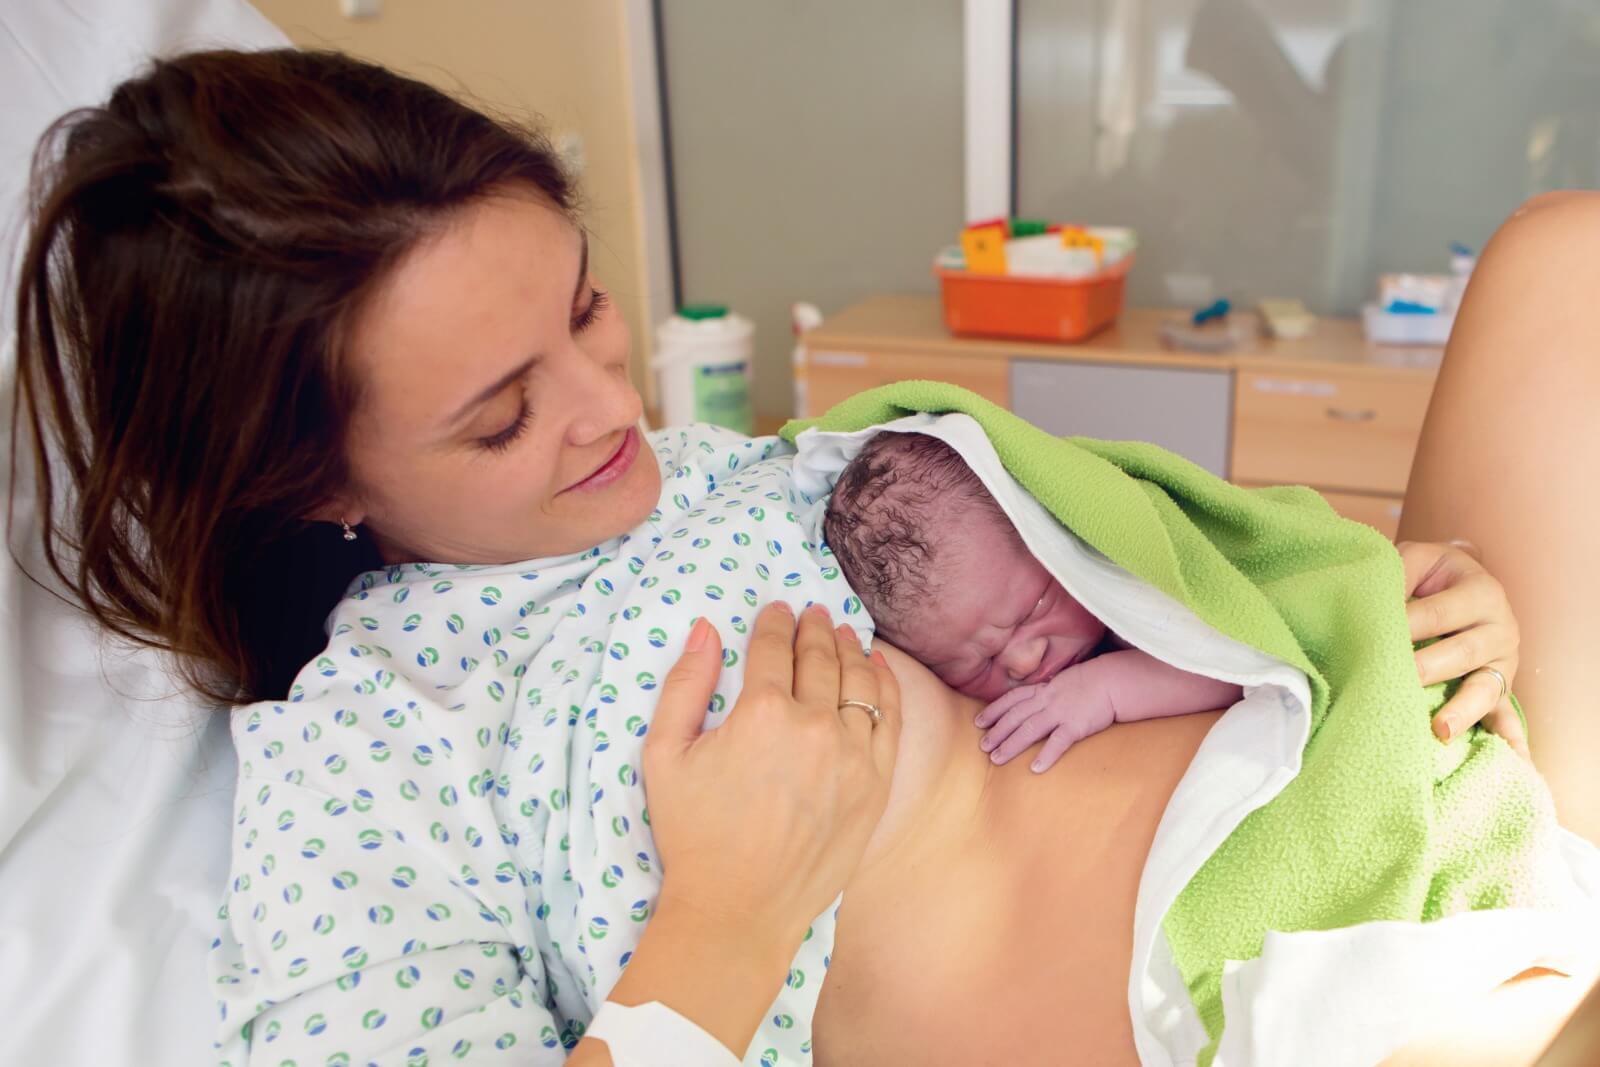 מגע עור לעור לאחר לידה - ארגון המיילדות בישראל